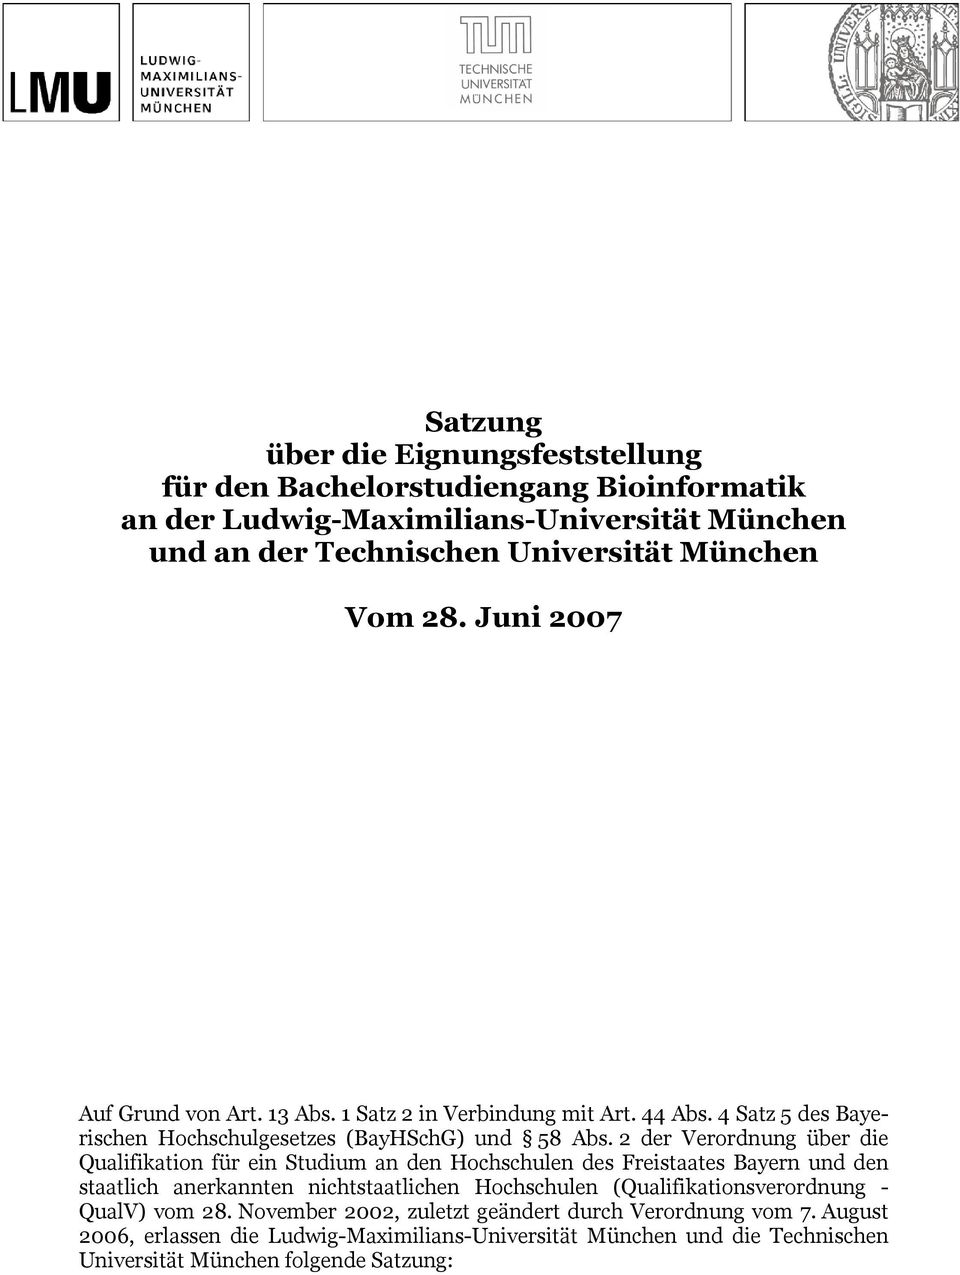 2 der Verordnung über die Qualifikation für ein Studium an den Hochschulen des Freistaates Bayern und den staatlich anerkannten nichtstaatlichen Hochschulen